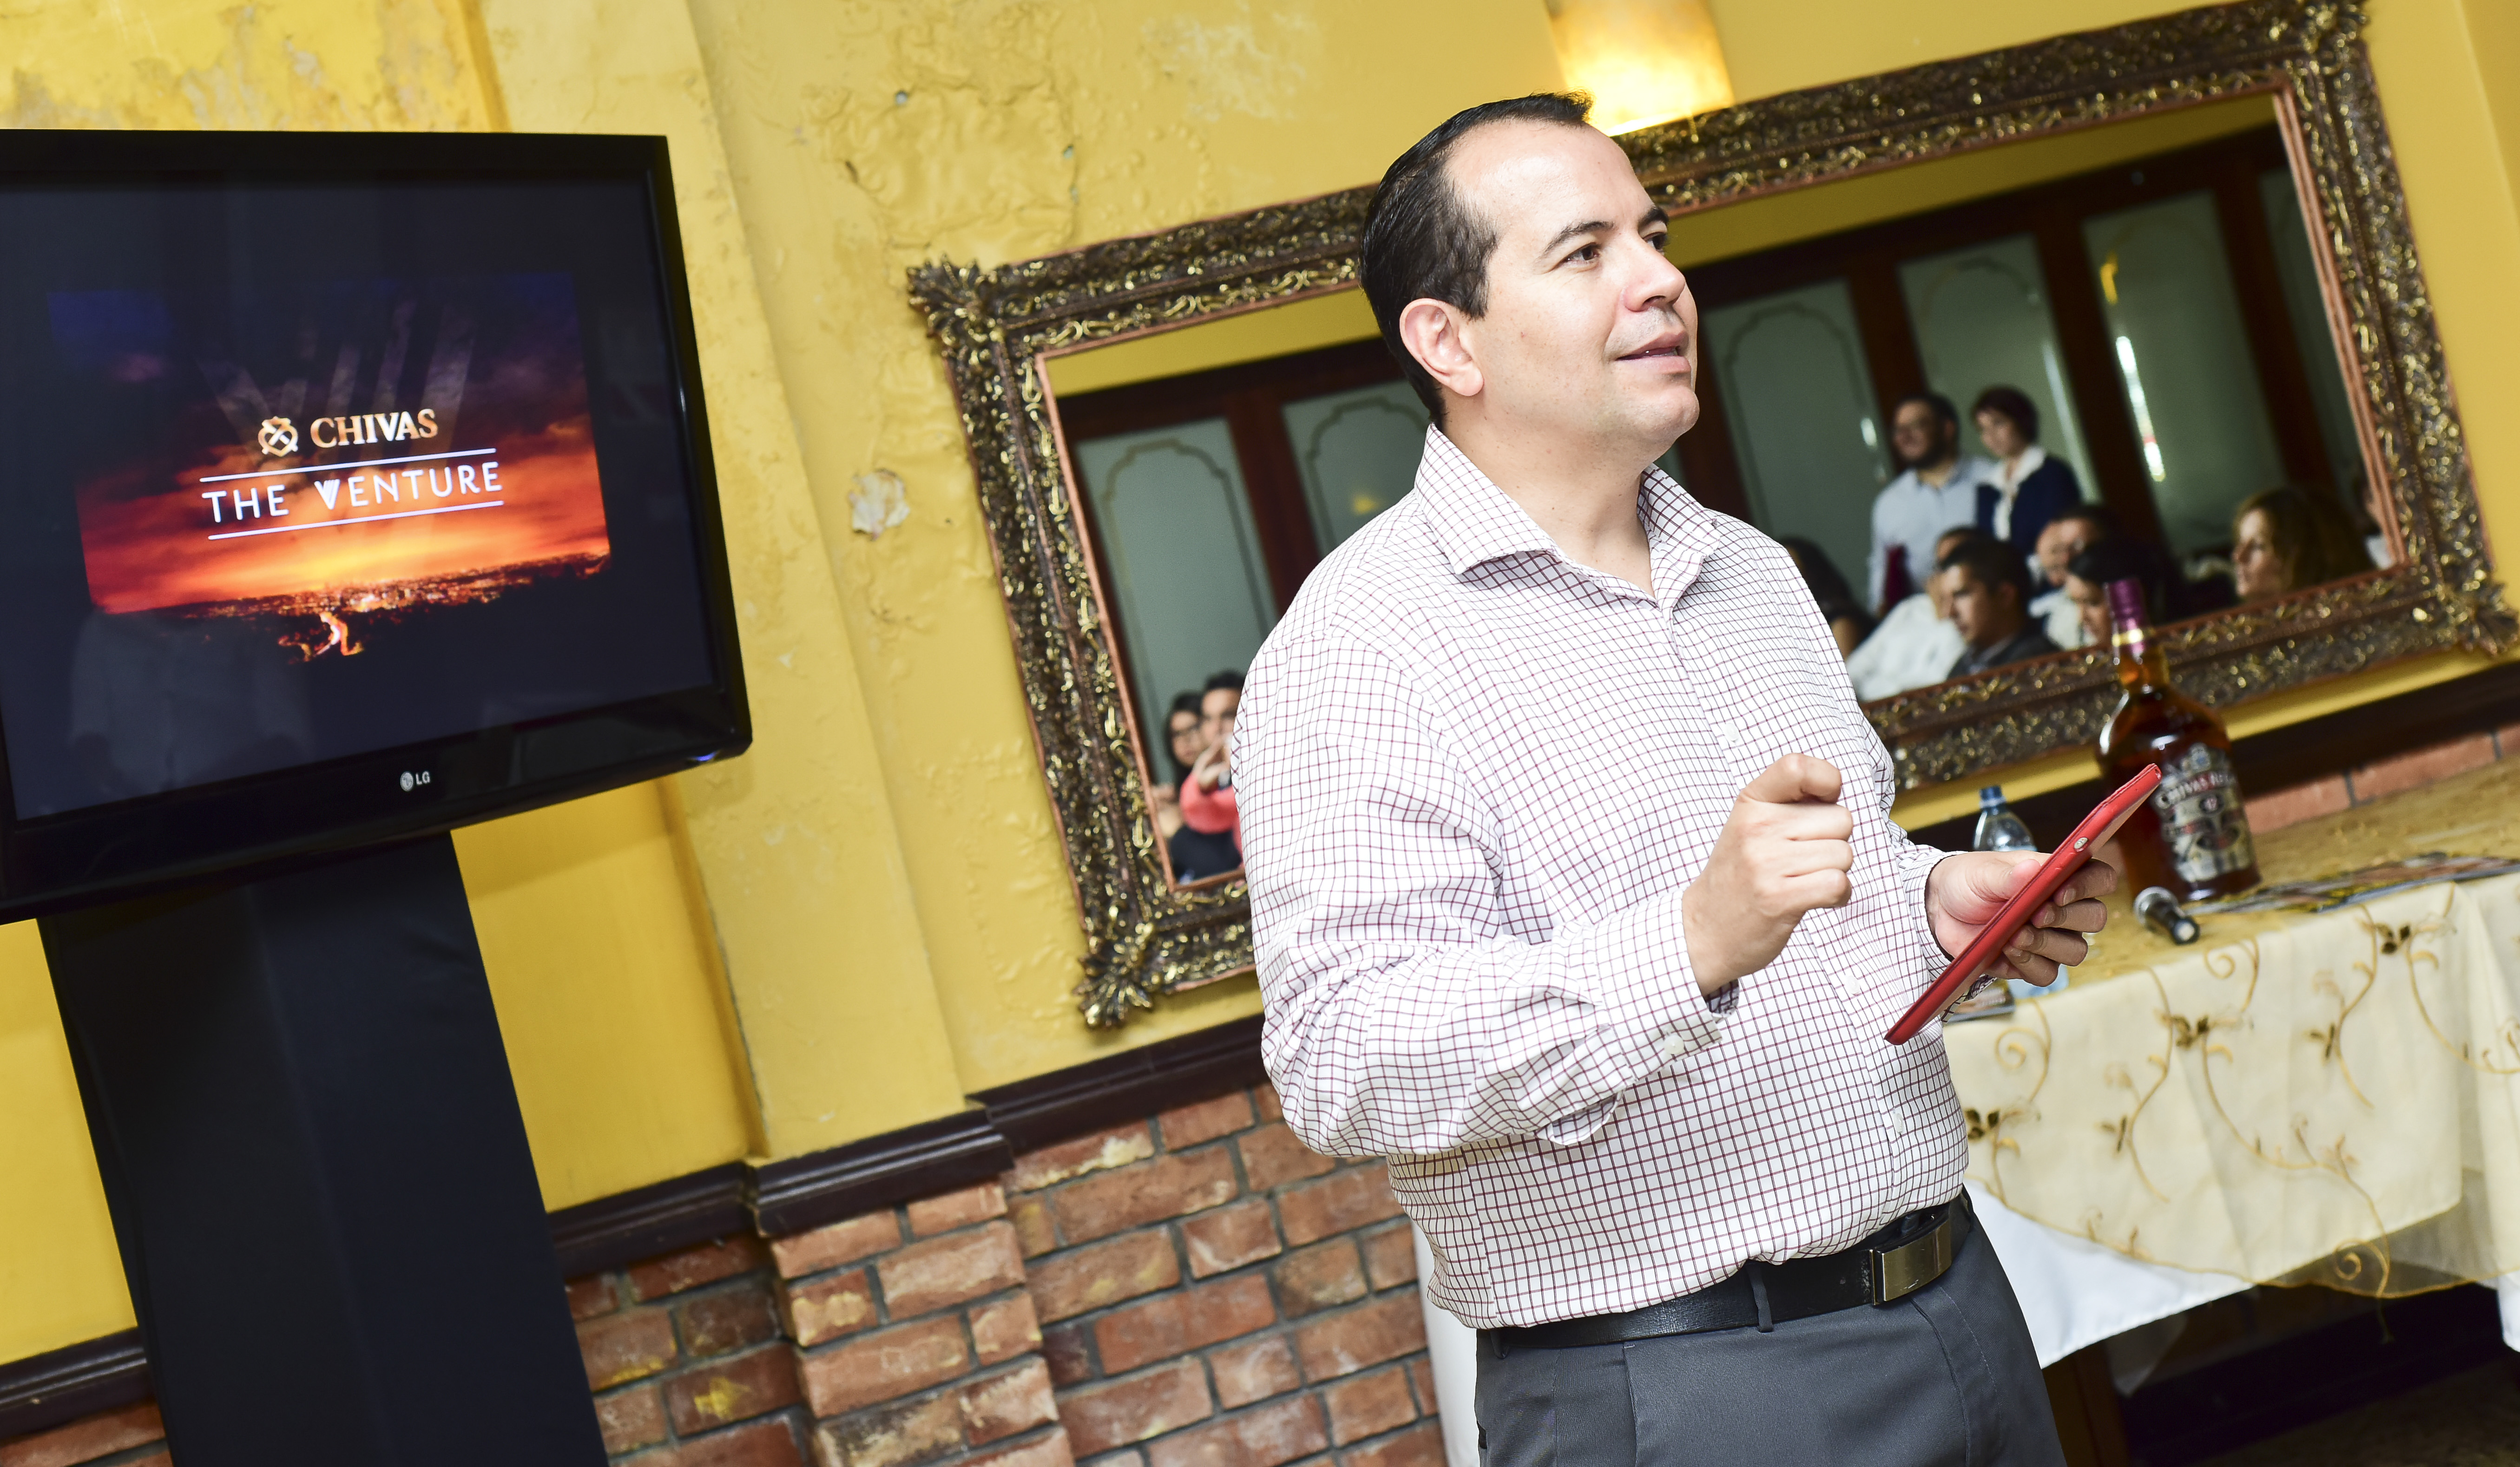 Chivas Regal ofrece un US$1 millón a emprendedores sociales